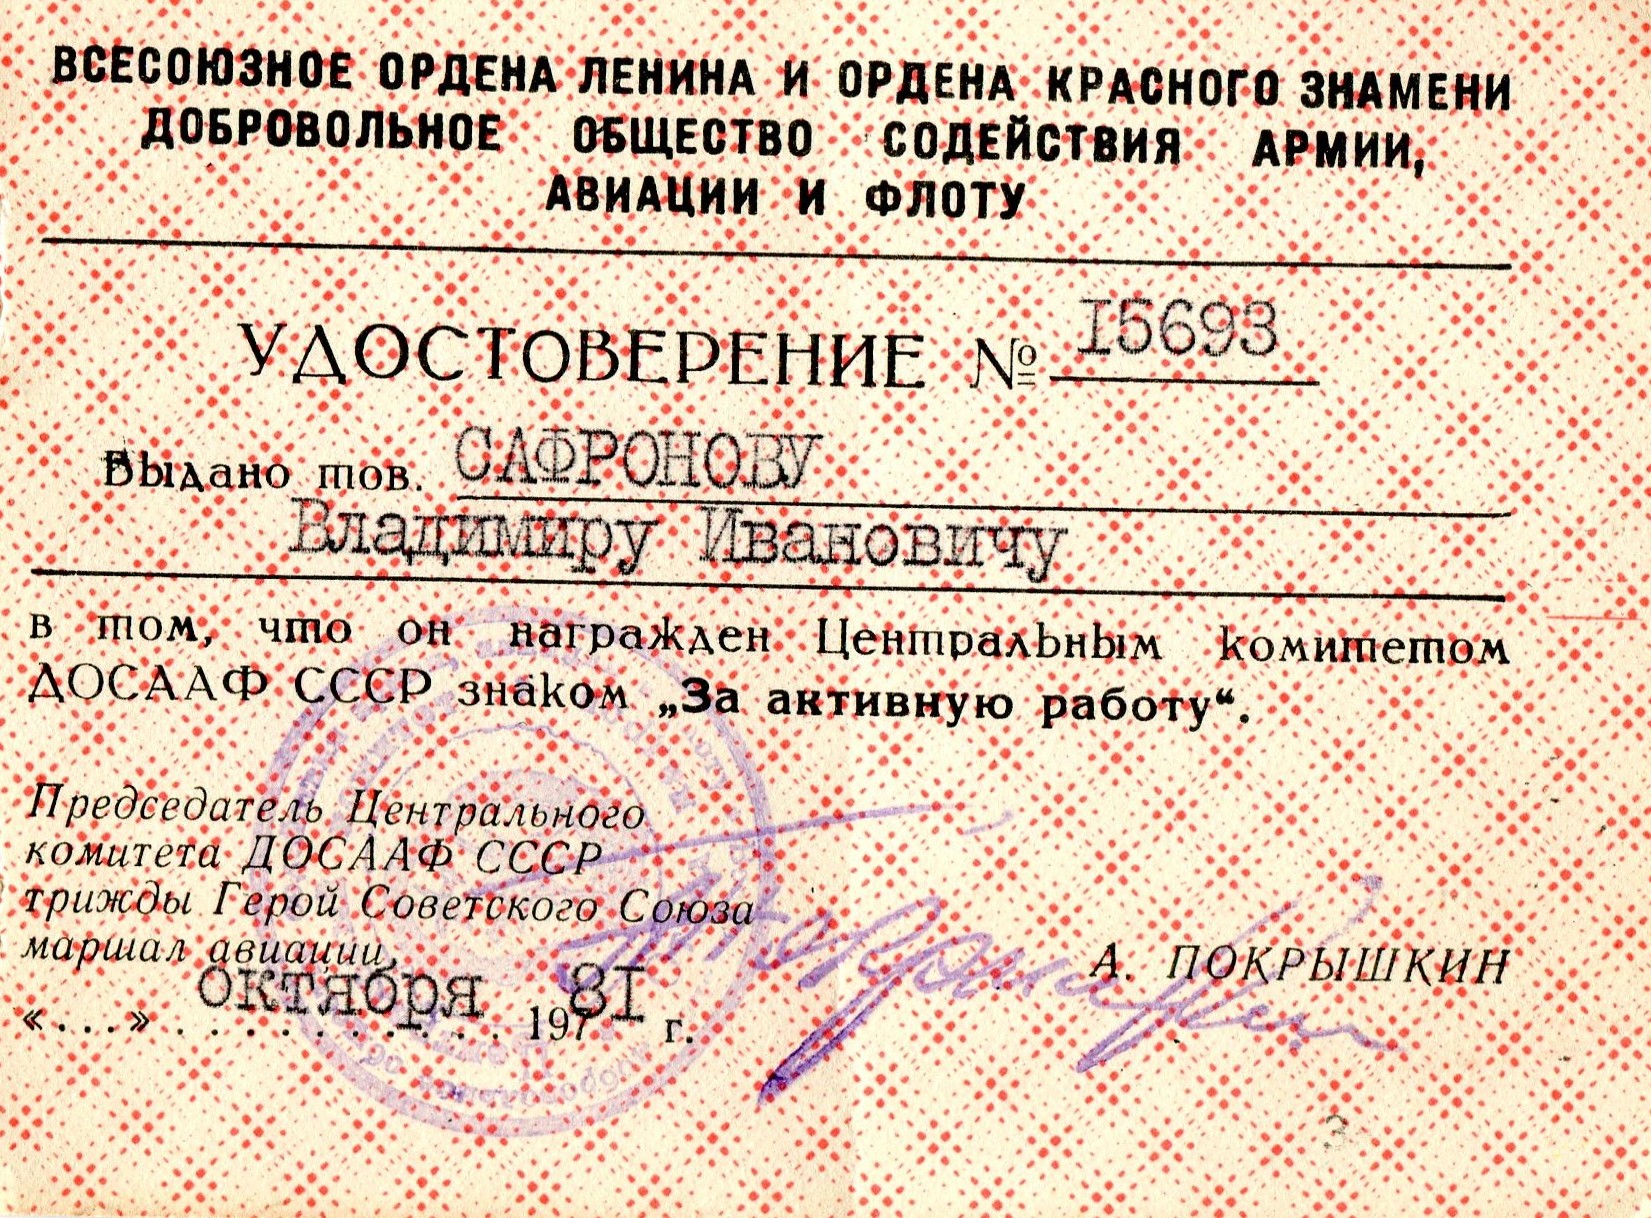 Экспонат #43. Удостоверение ДОСААФ СССР к знаку «За активную работу». Октябрь 1981 года